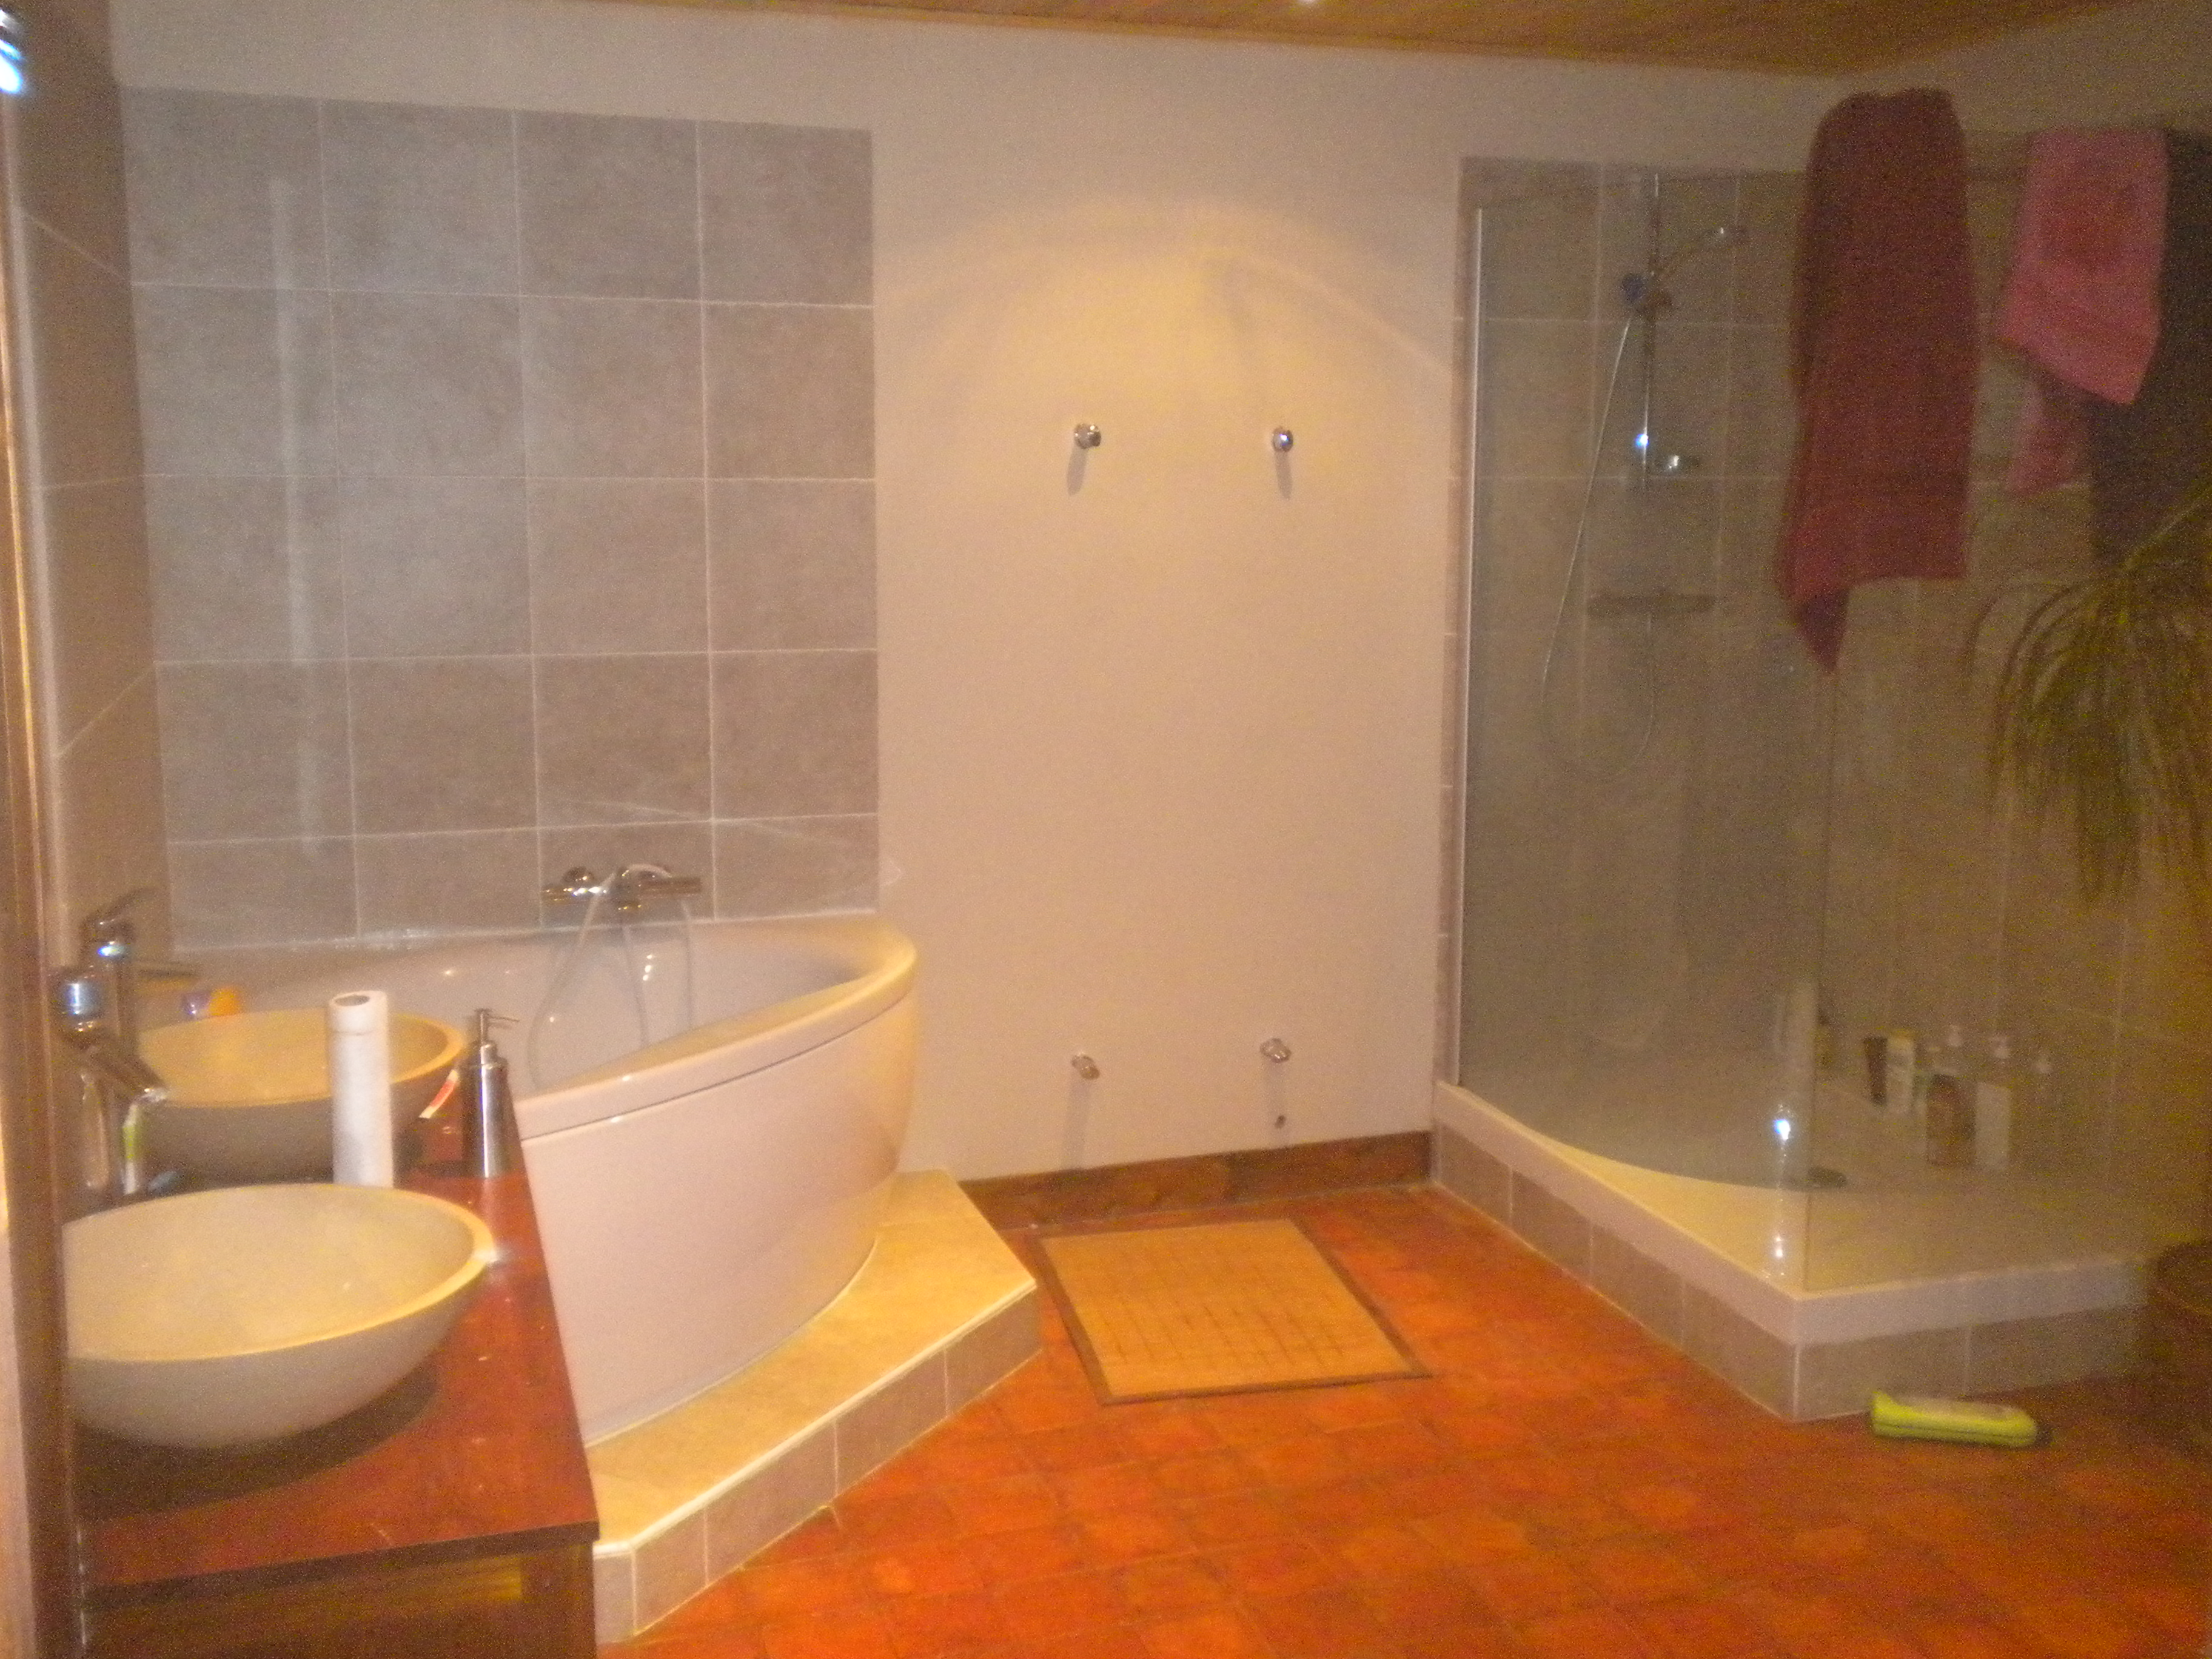 Salle de bains rénovation clé en main de Bonnétable baignoire d'angle et douche (5)